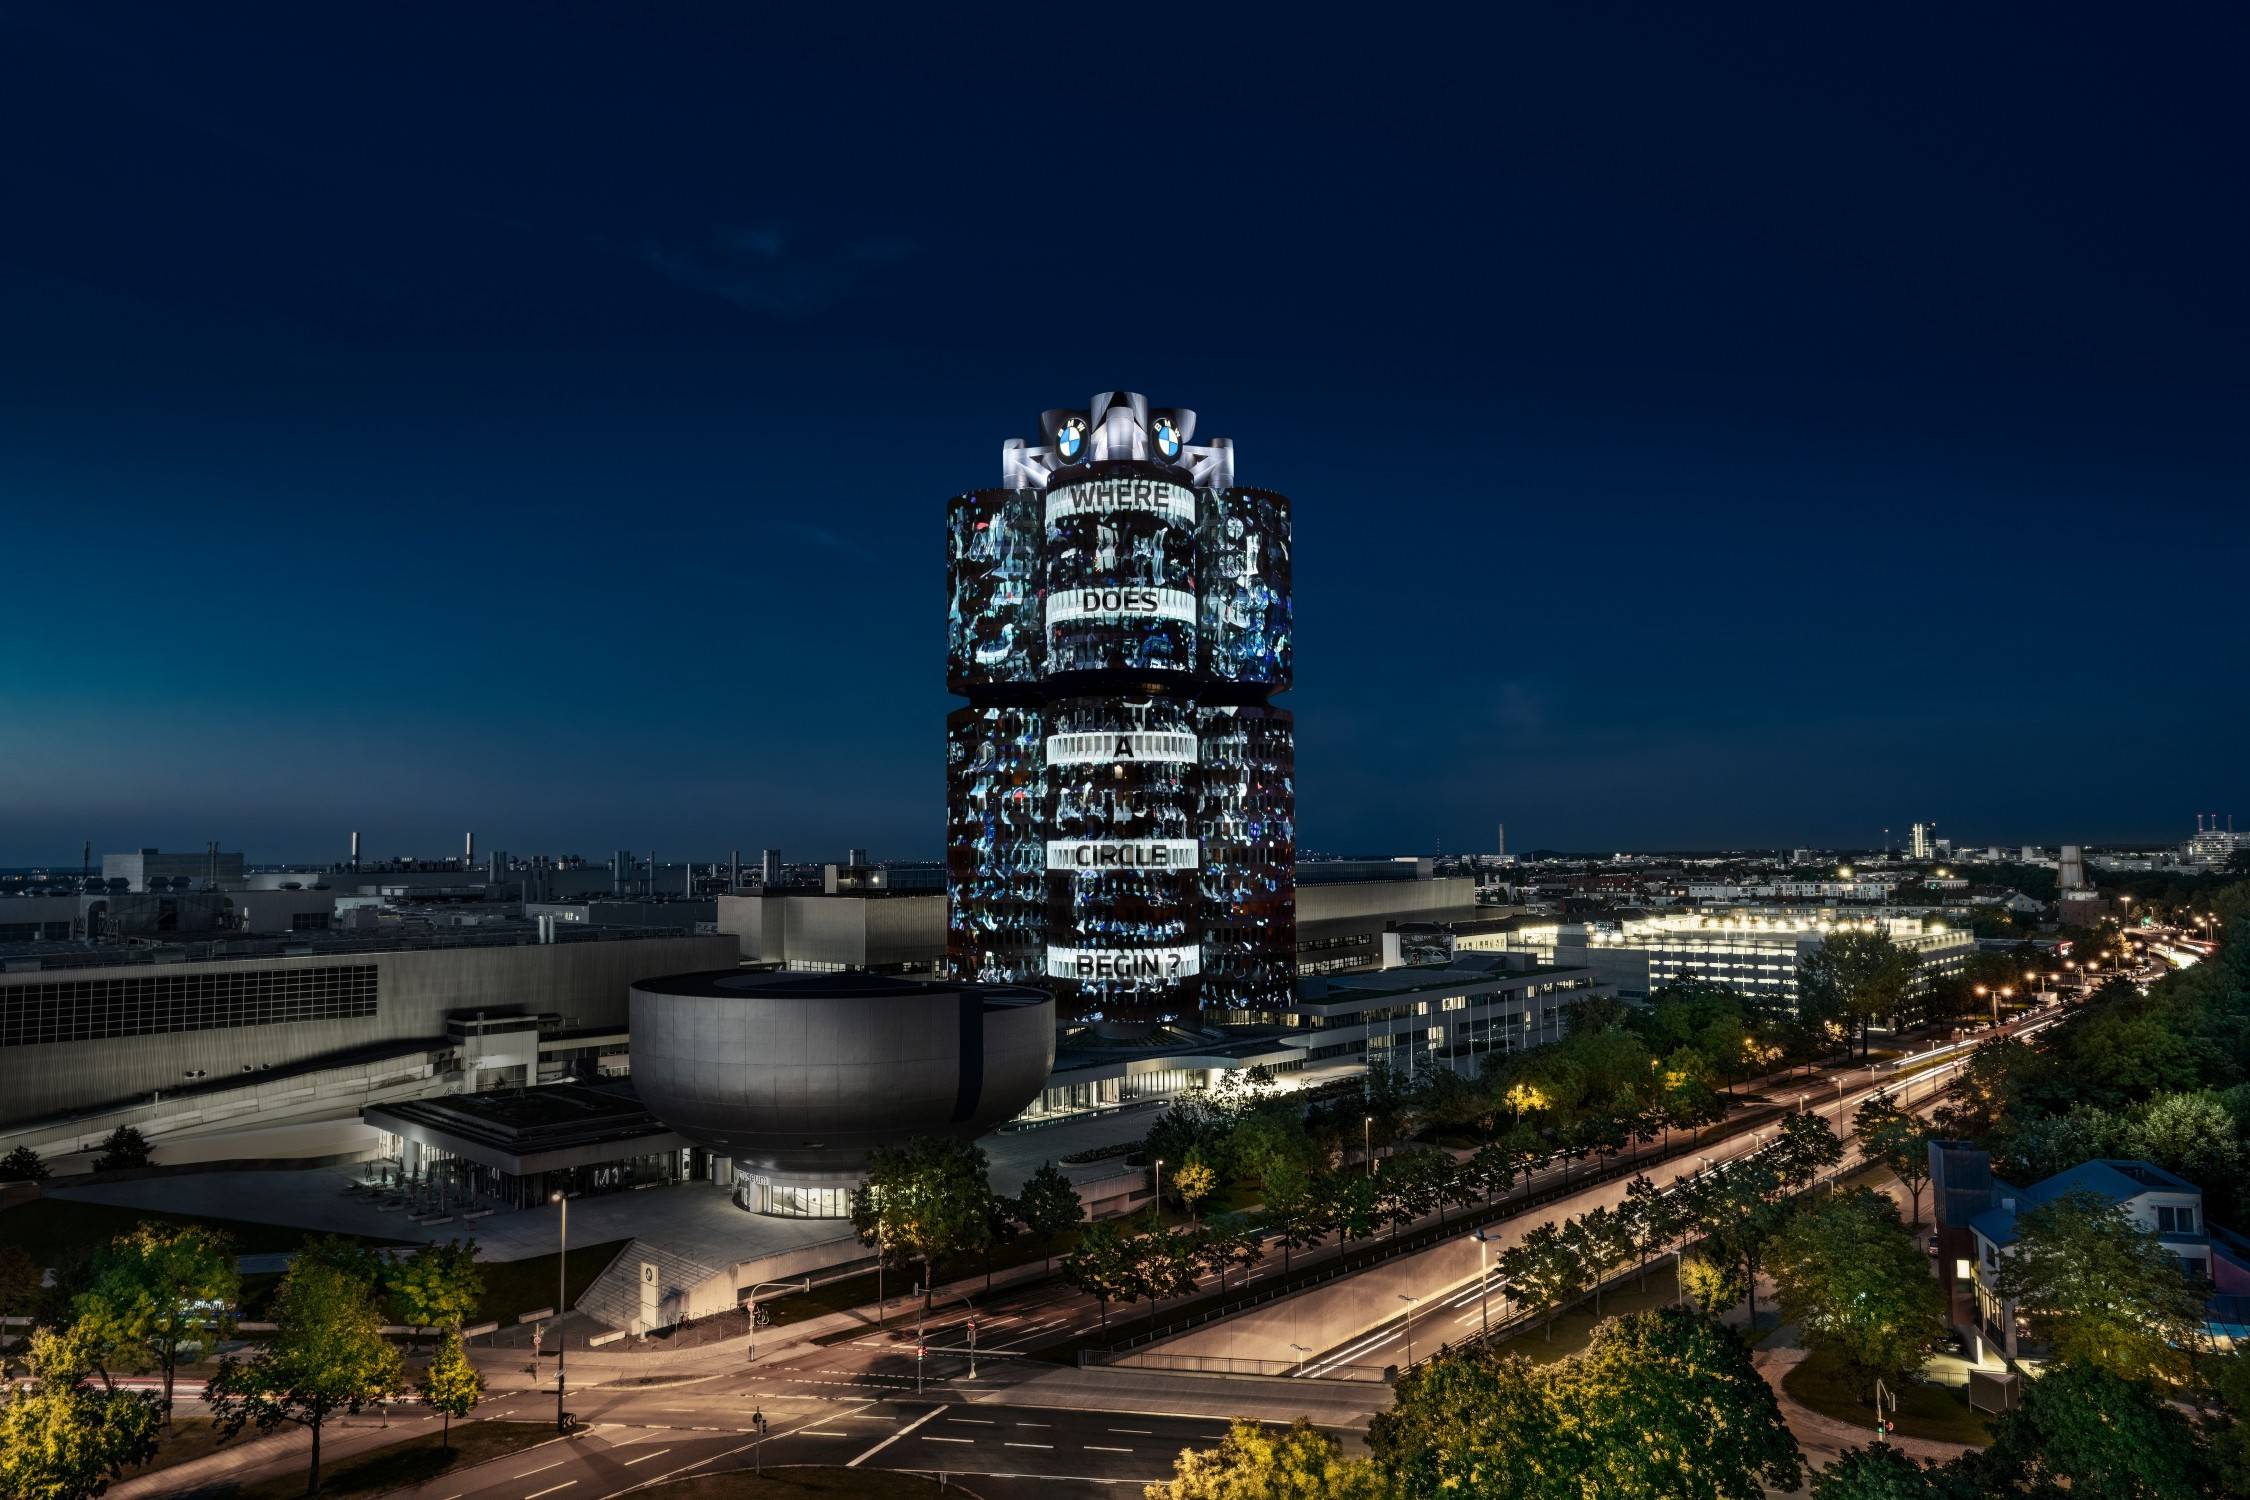 宝马总部四缸大厦照亮慕尼黑夜空,传达可持续,循环经济和电动出行的